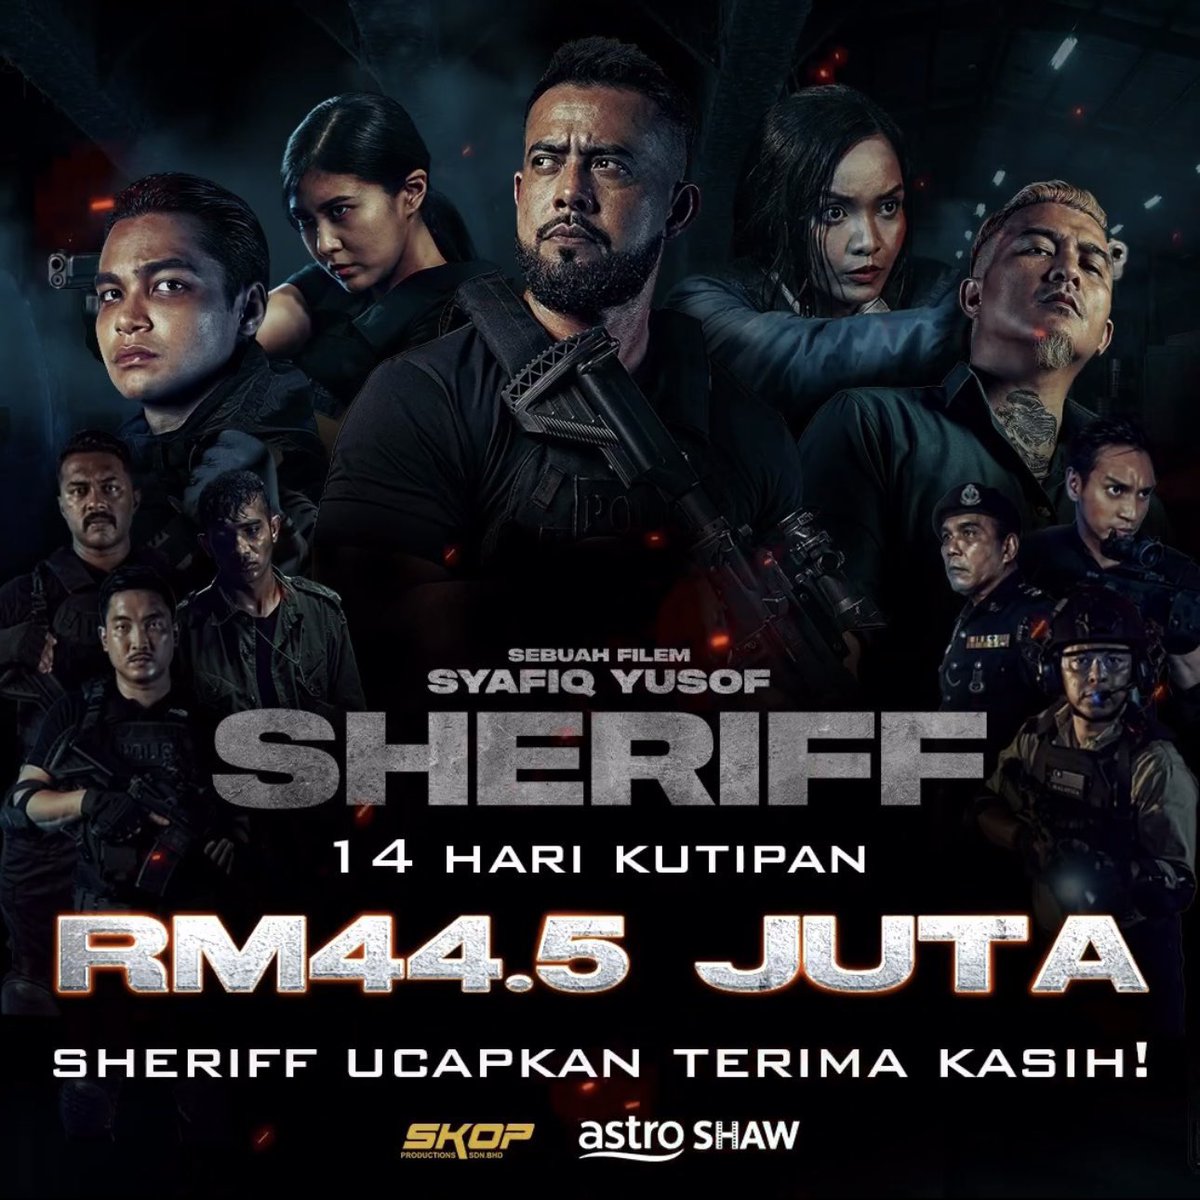 Tahniah atas kejayaan filem #Sheriff yang mengutip RM44.5 juta dalam tempoh 14 hari. Setakat ini #Sheriff berada di kedudukan keempat dalam senarai kutipan filem Malaysia tertinggi sepanjang zaman.